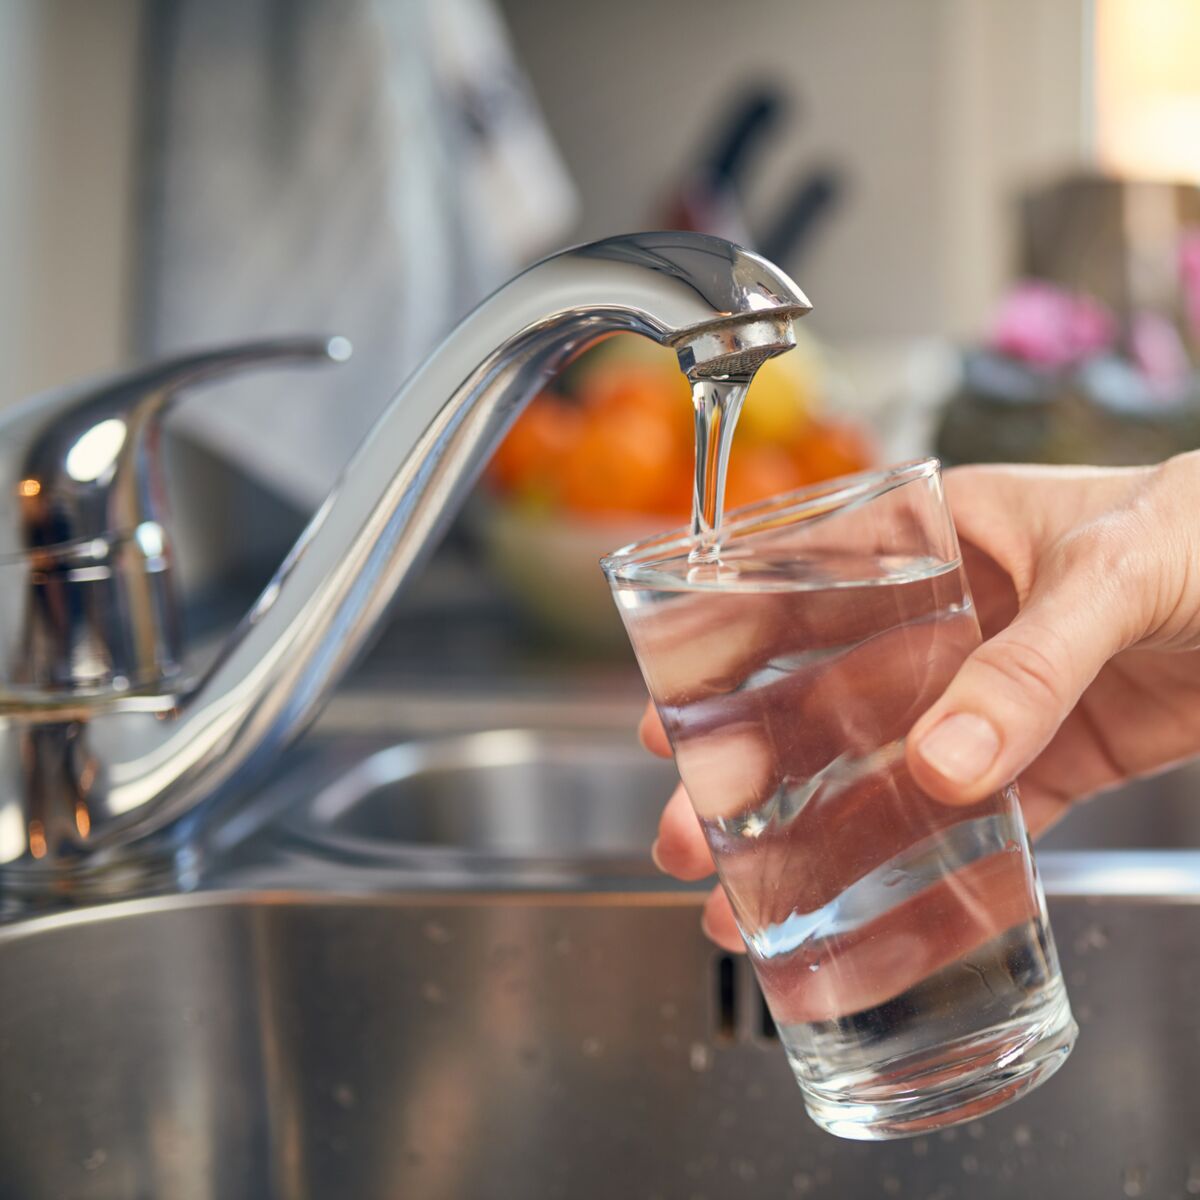 En bouteille ou du robinet : ces erreurs à éviter avec l'eau